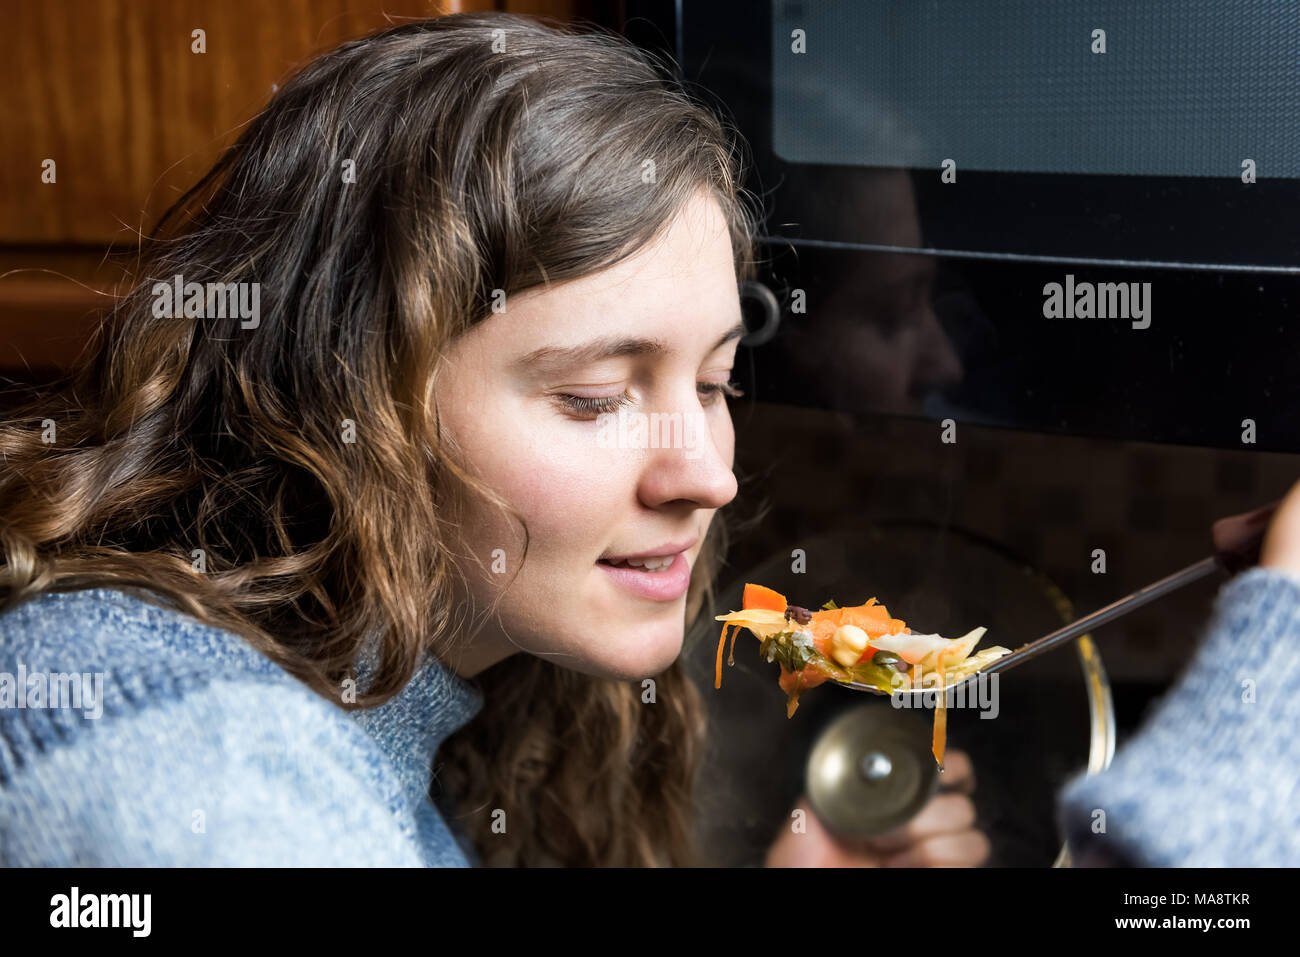 Portrait de gros plan visage jeune femme essayant d'hiver chaud chaud maison soupe de légumes de spoon, bouche ouverte smiling in cold sweater Banque D'Images